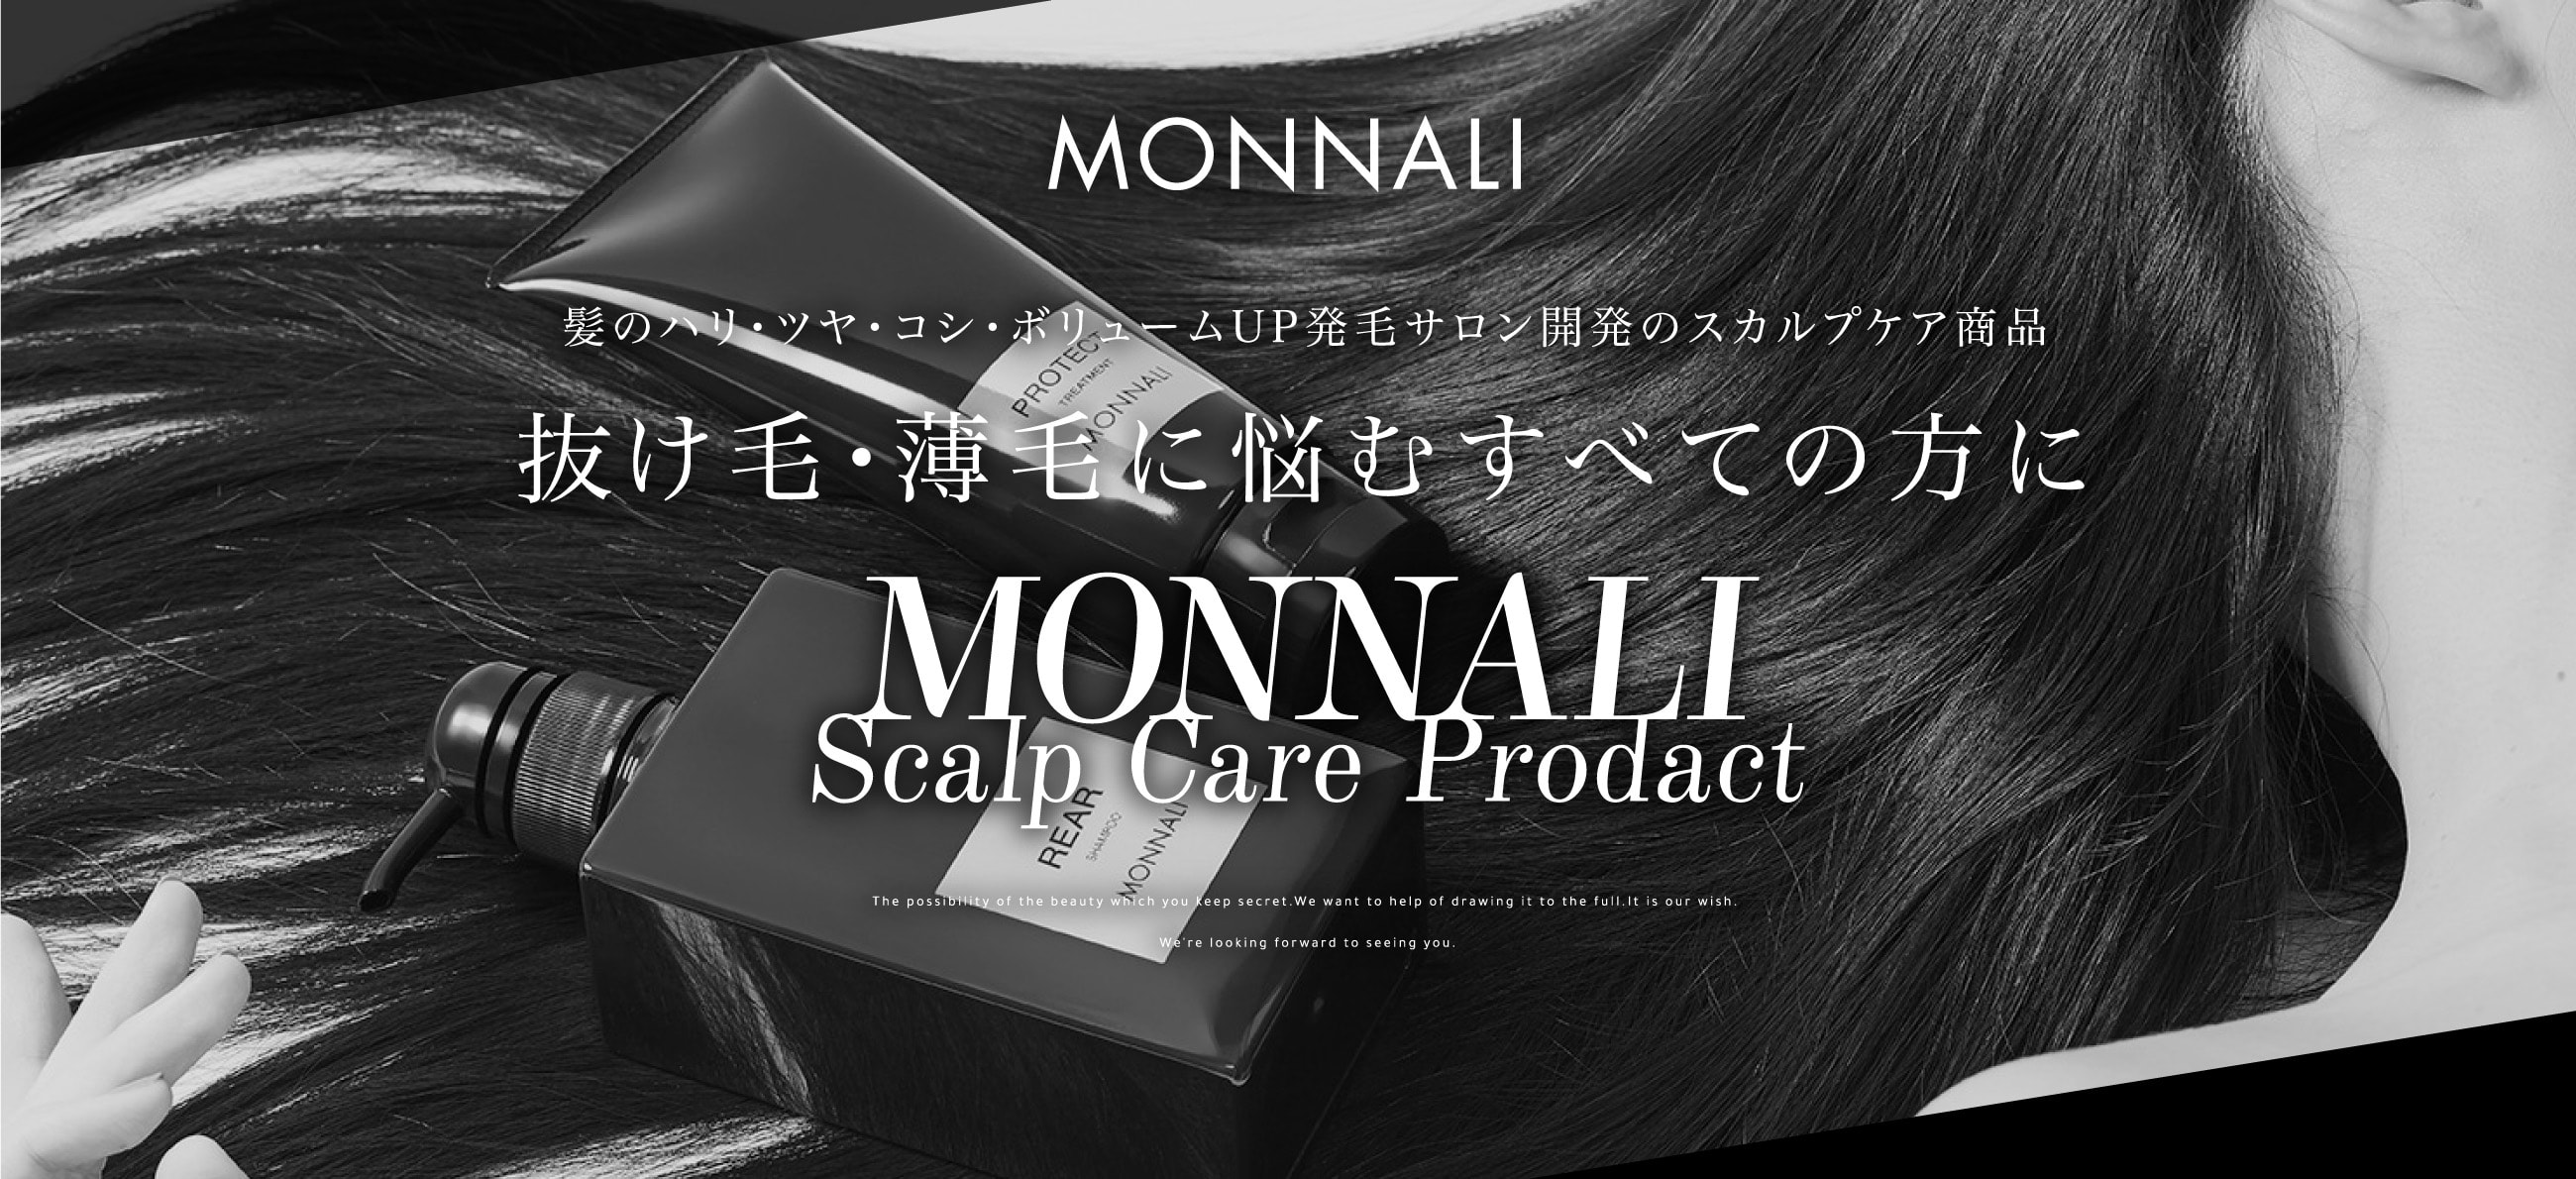 モナリ MONNALI クリーン CLEAN スカルプミスト